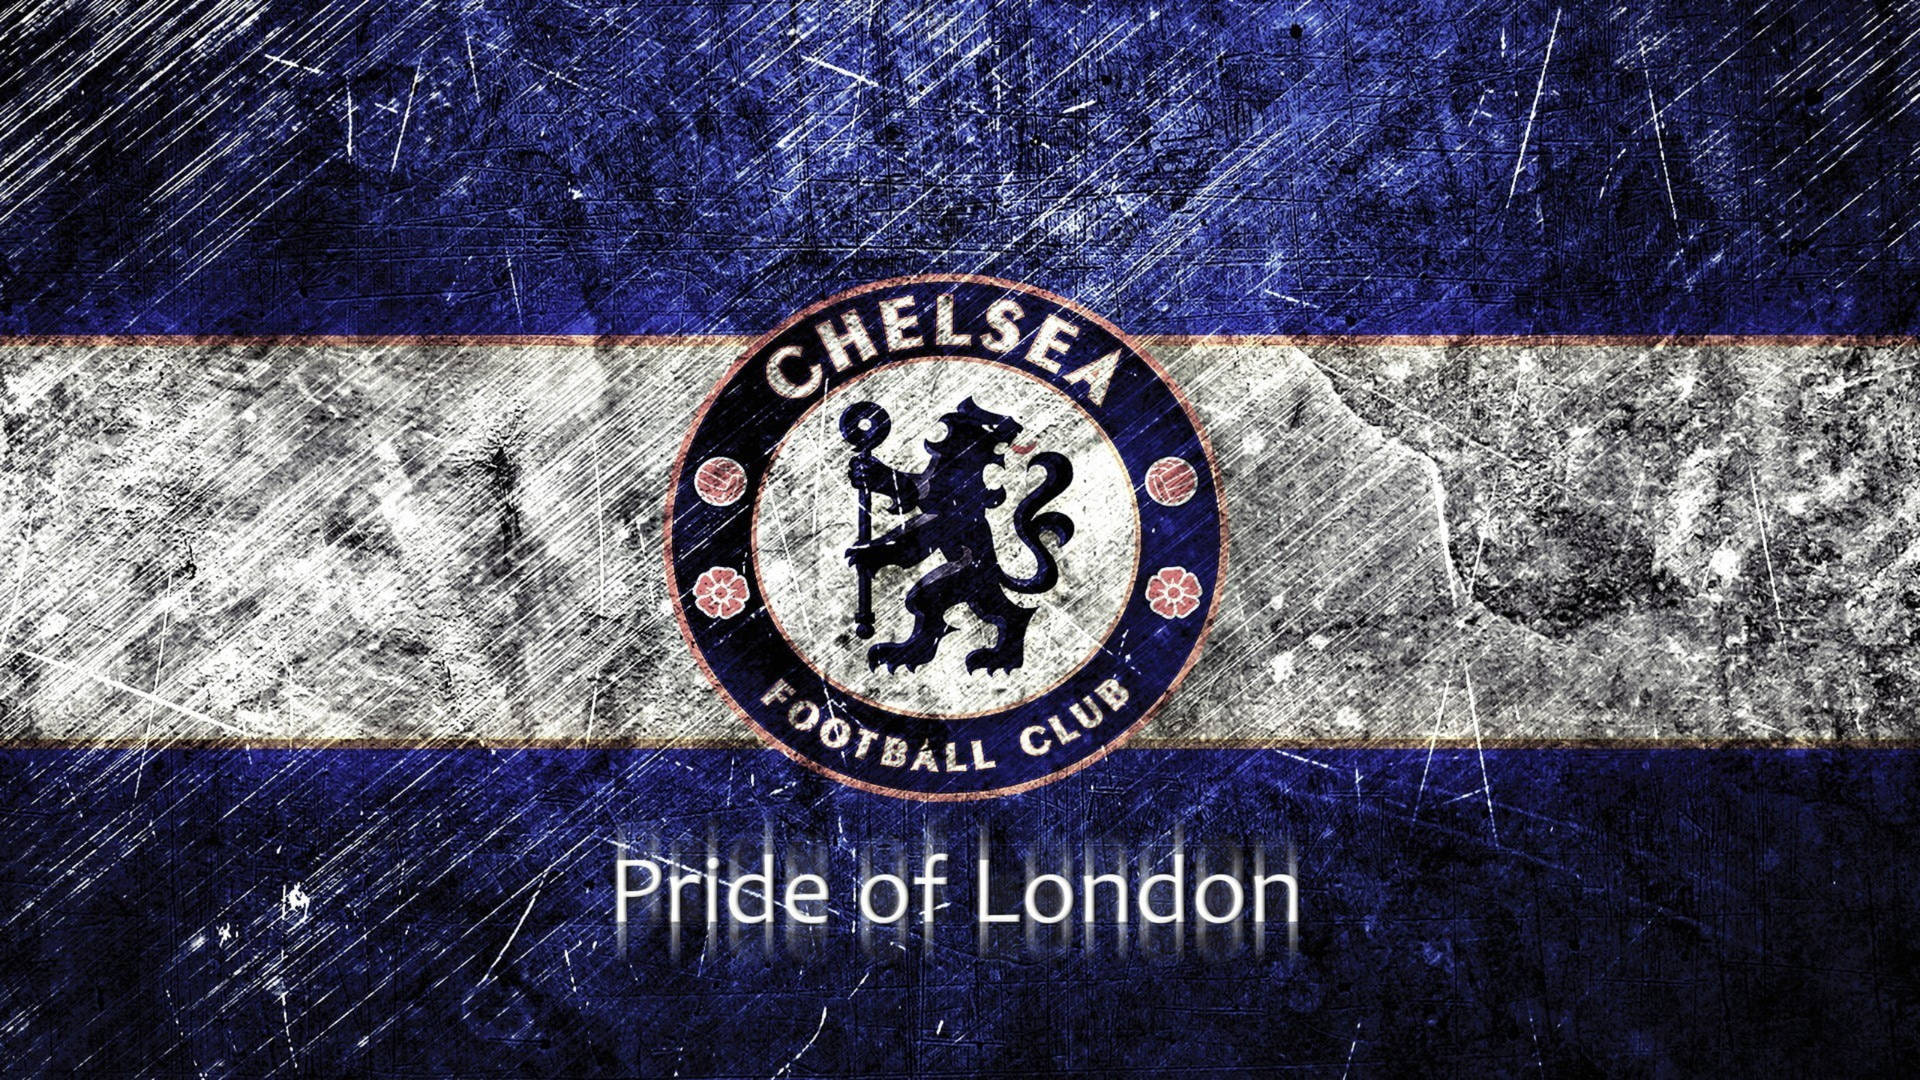 Premier League Chelsea Grunge Theme Background